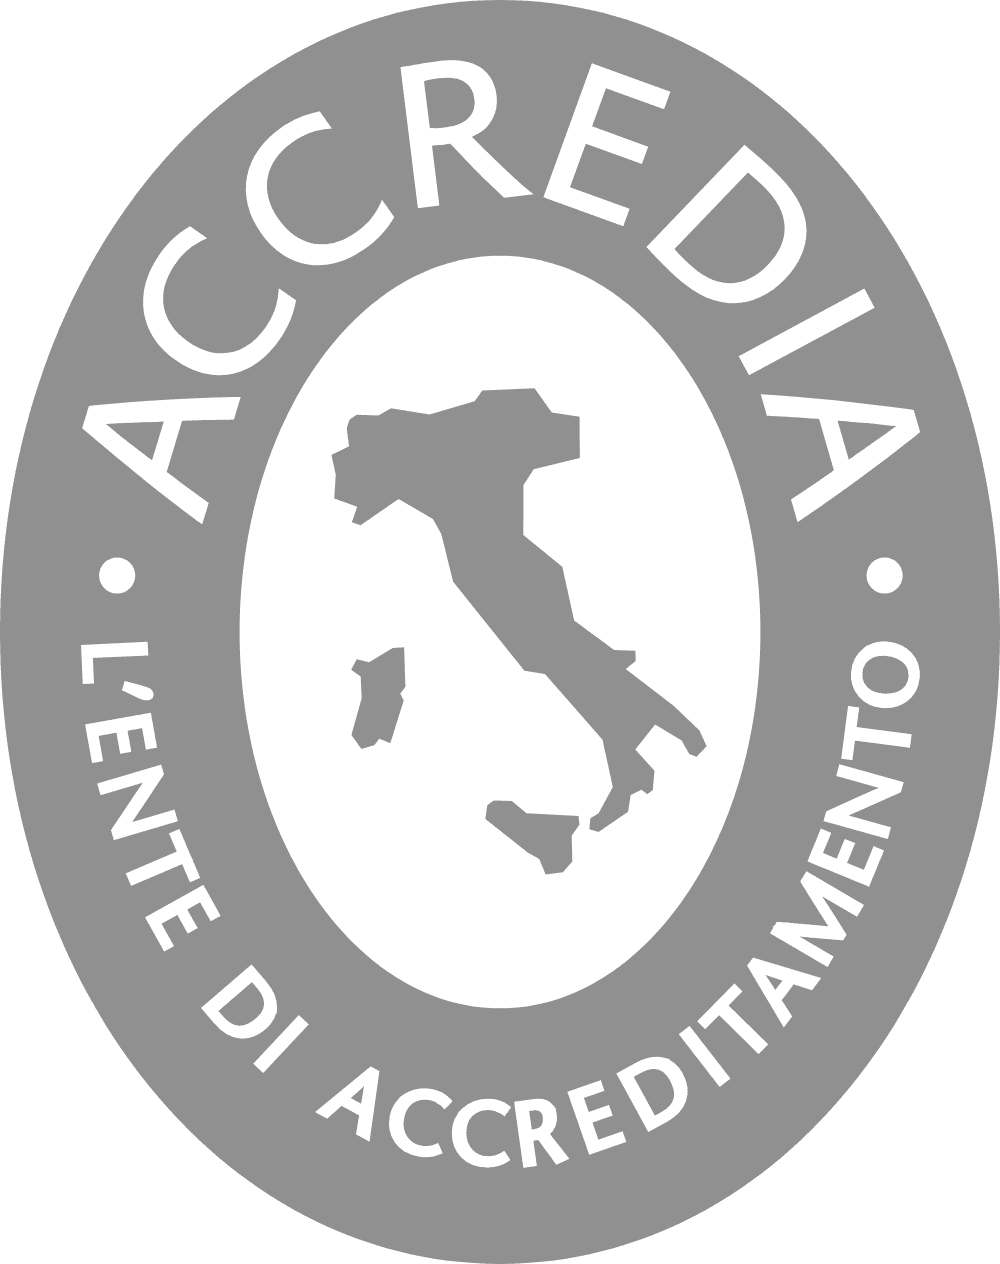 Accredia Logo download